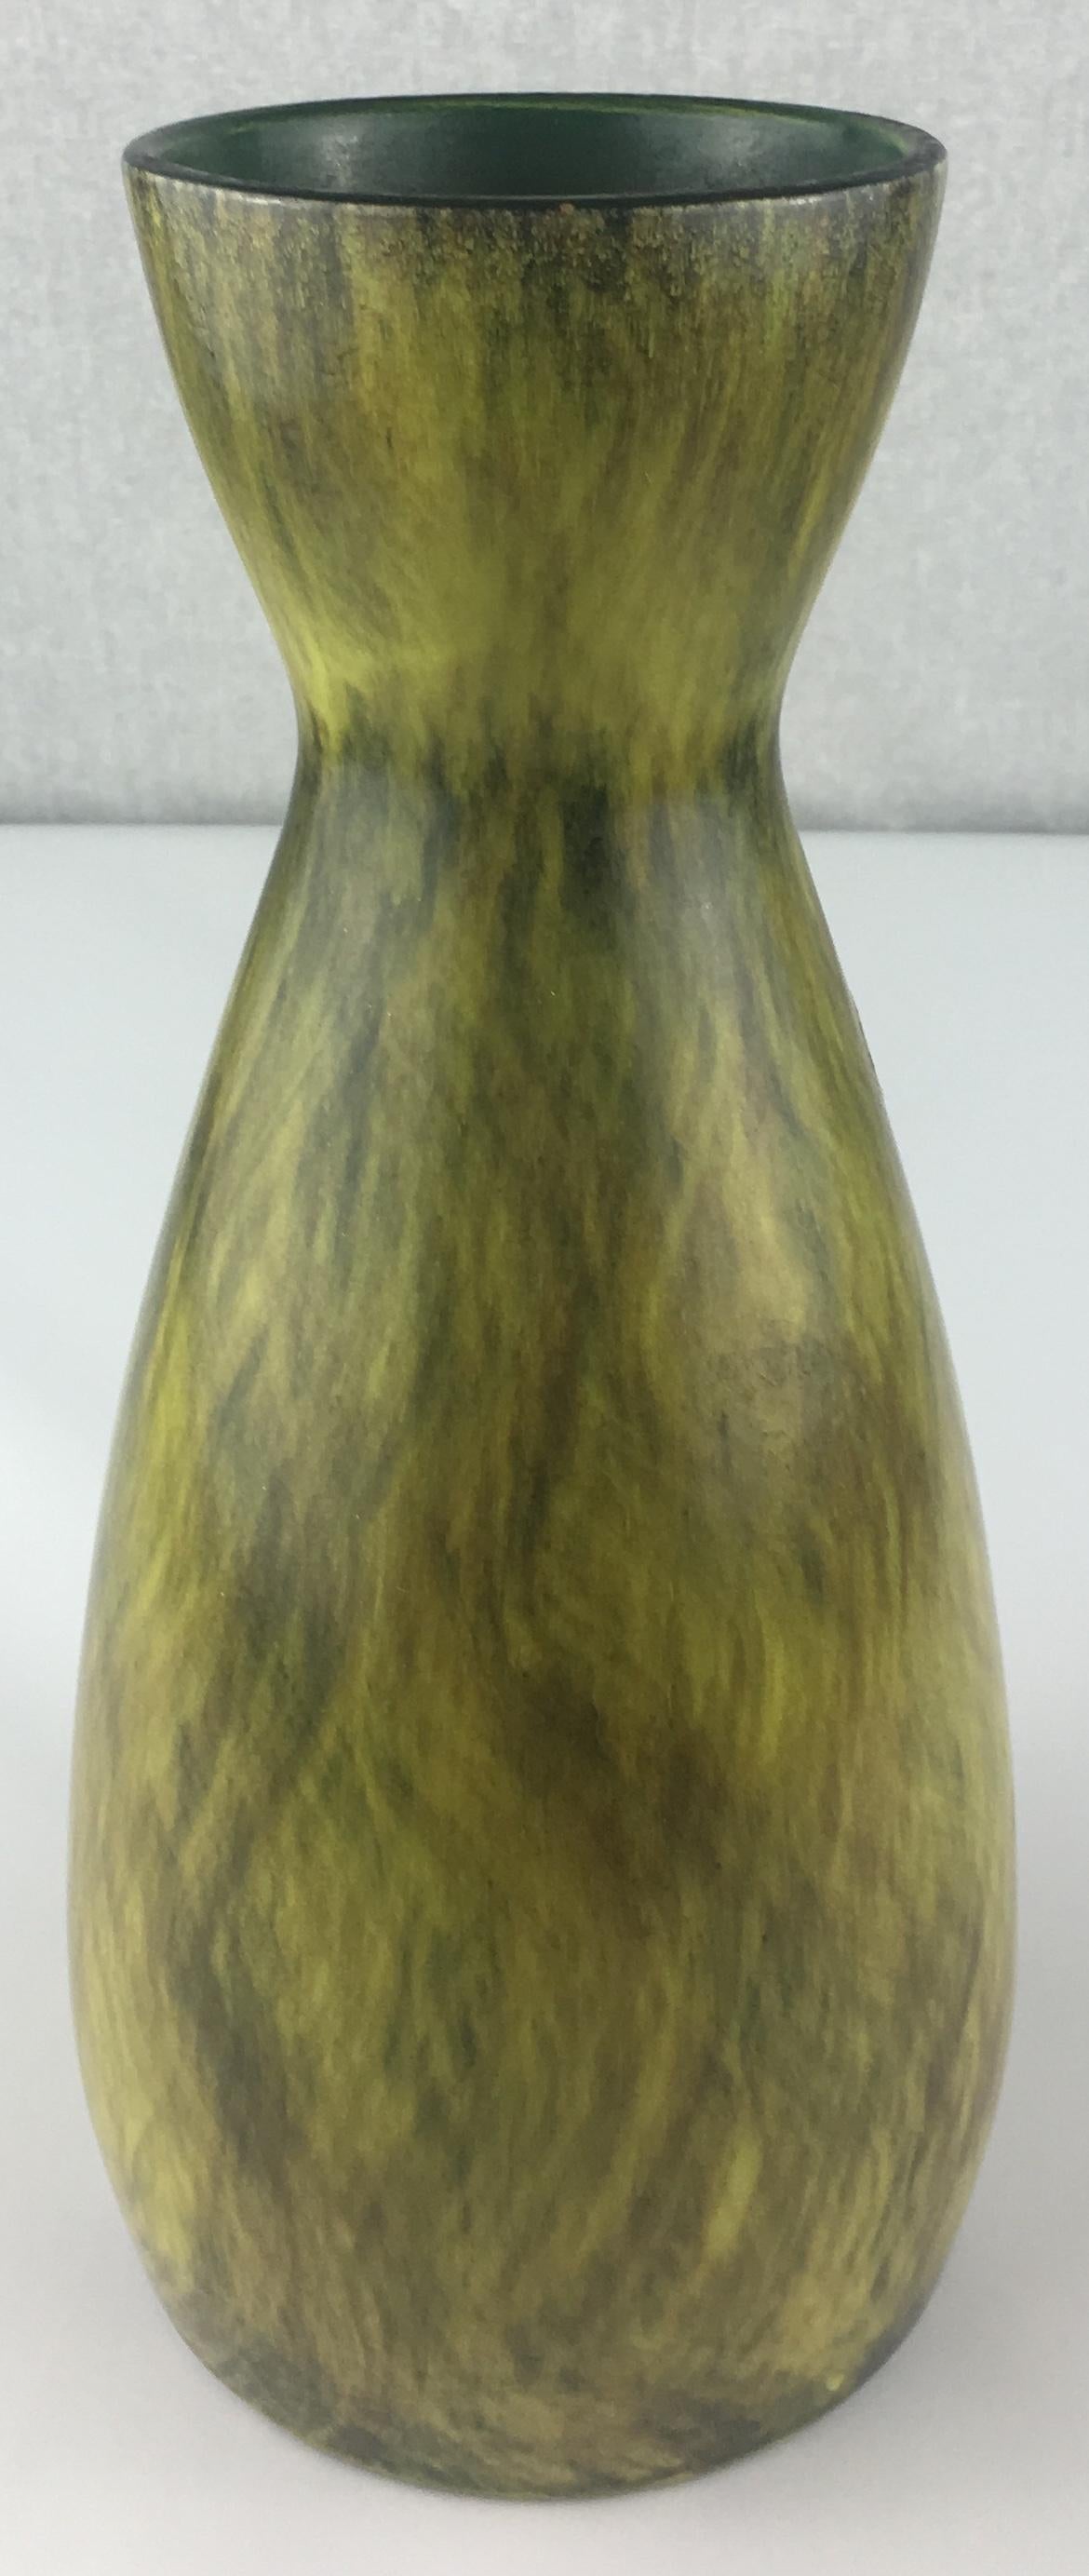 Superbe vase en céramique français du milieu du siècle par St. Clement. Ce magnifique vase est très décoratif et présente un magnifique fond noir avec des nuances vertes. Il semble presque en mouvement, comme les herbes marines, ce qui le rend très